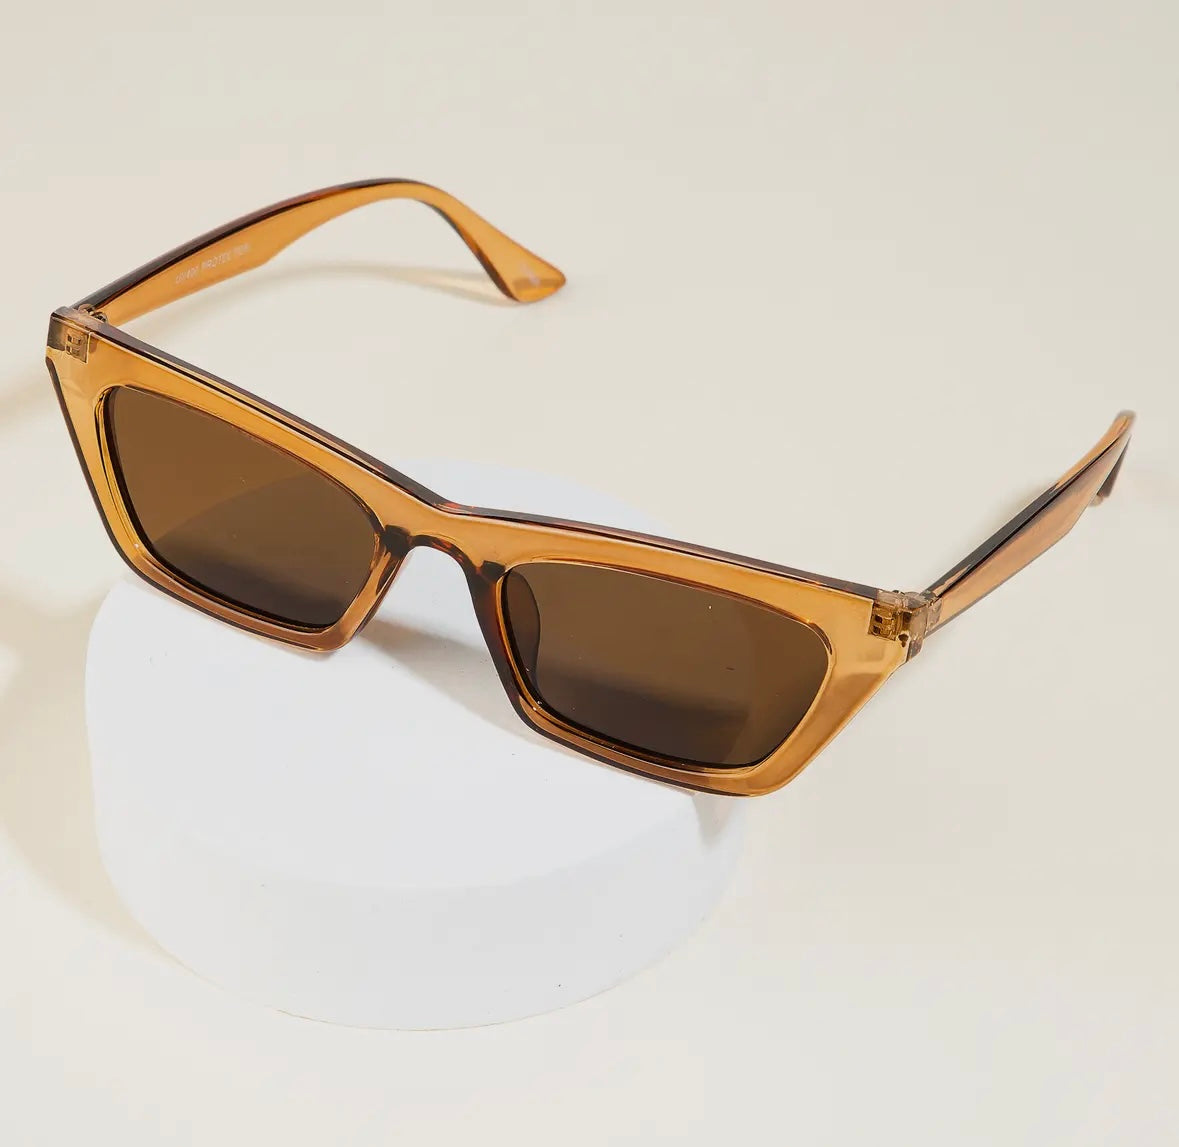 Angular spexx sunglasses